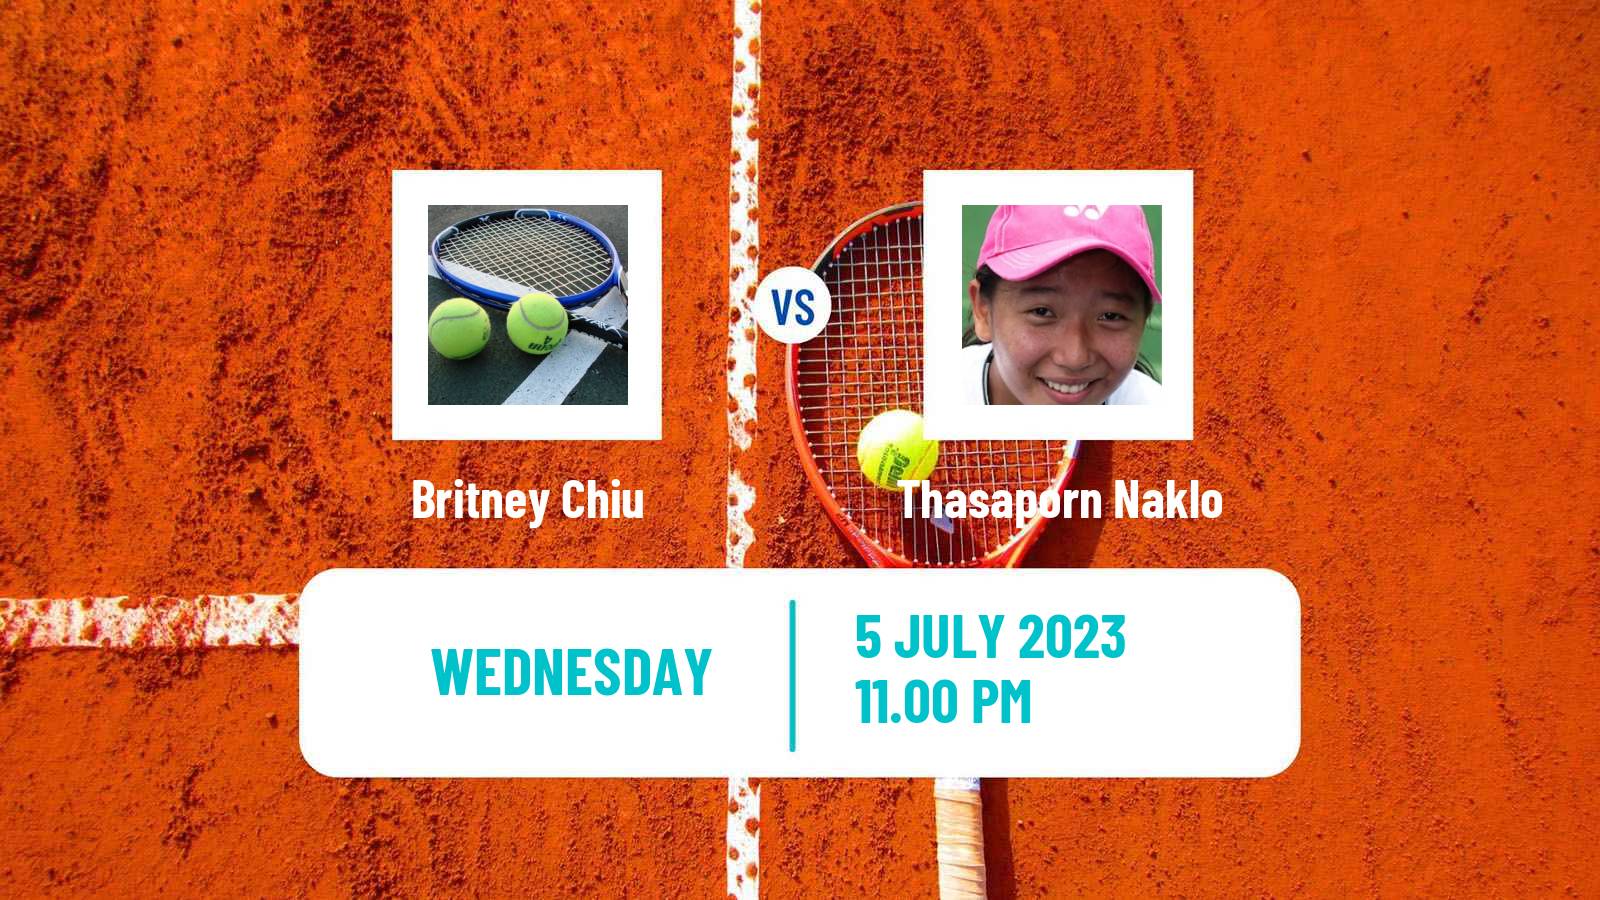 Tennis ITF W15 Tianjin 4 Women Britney Chiu - Thasaporn Naklo